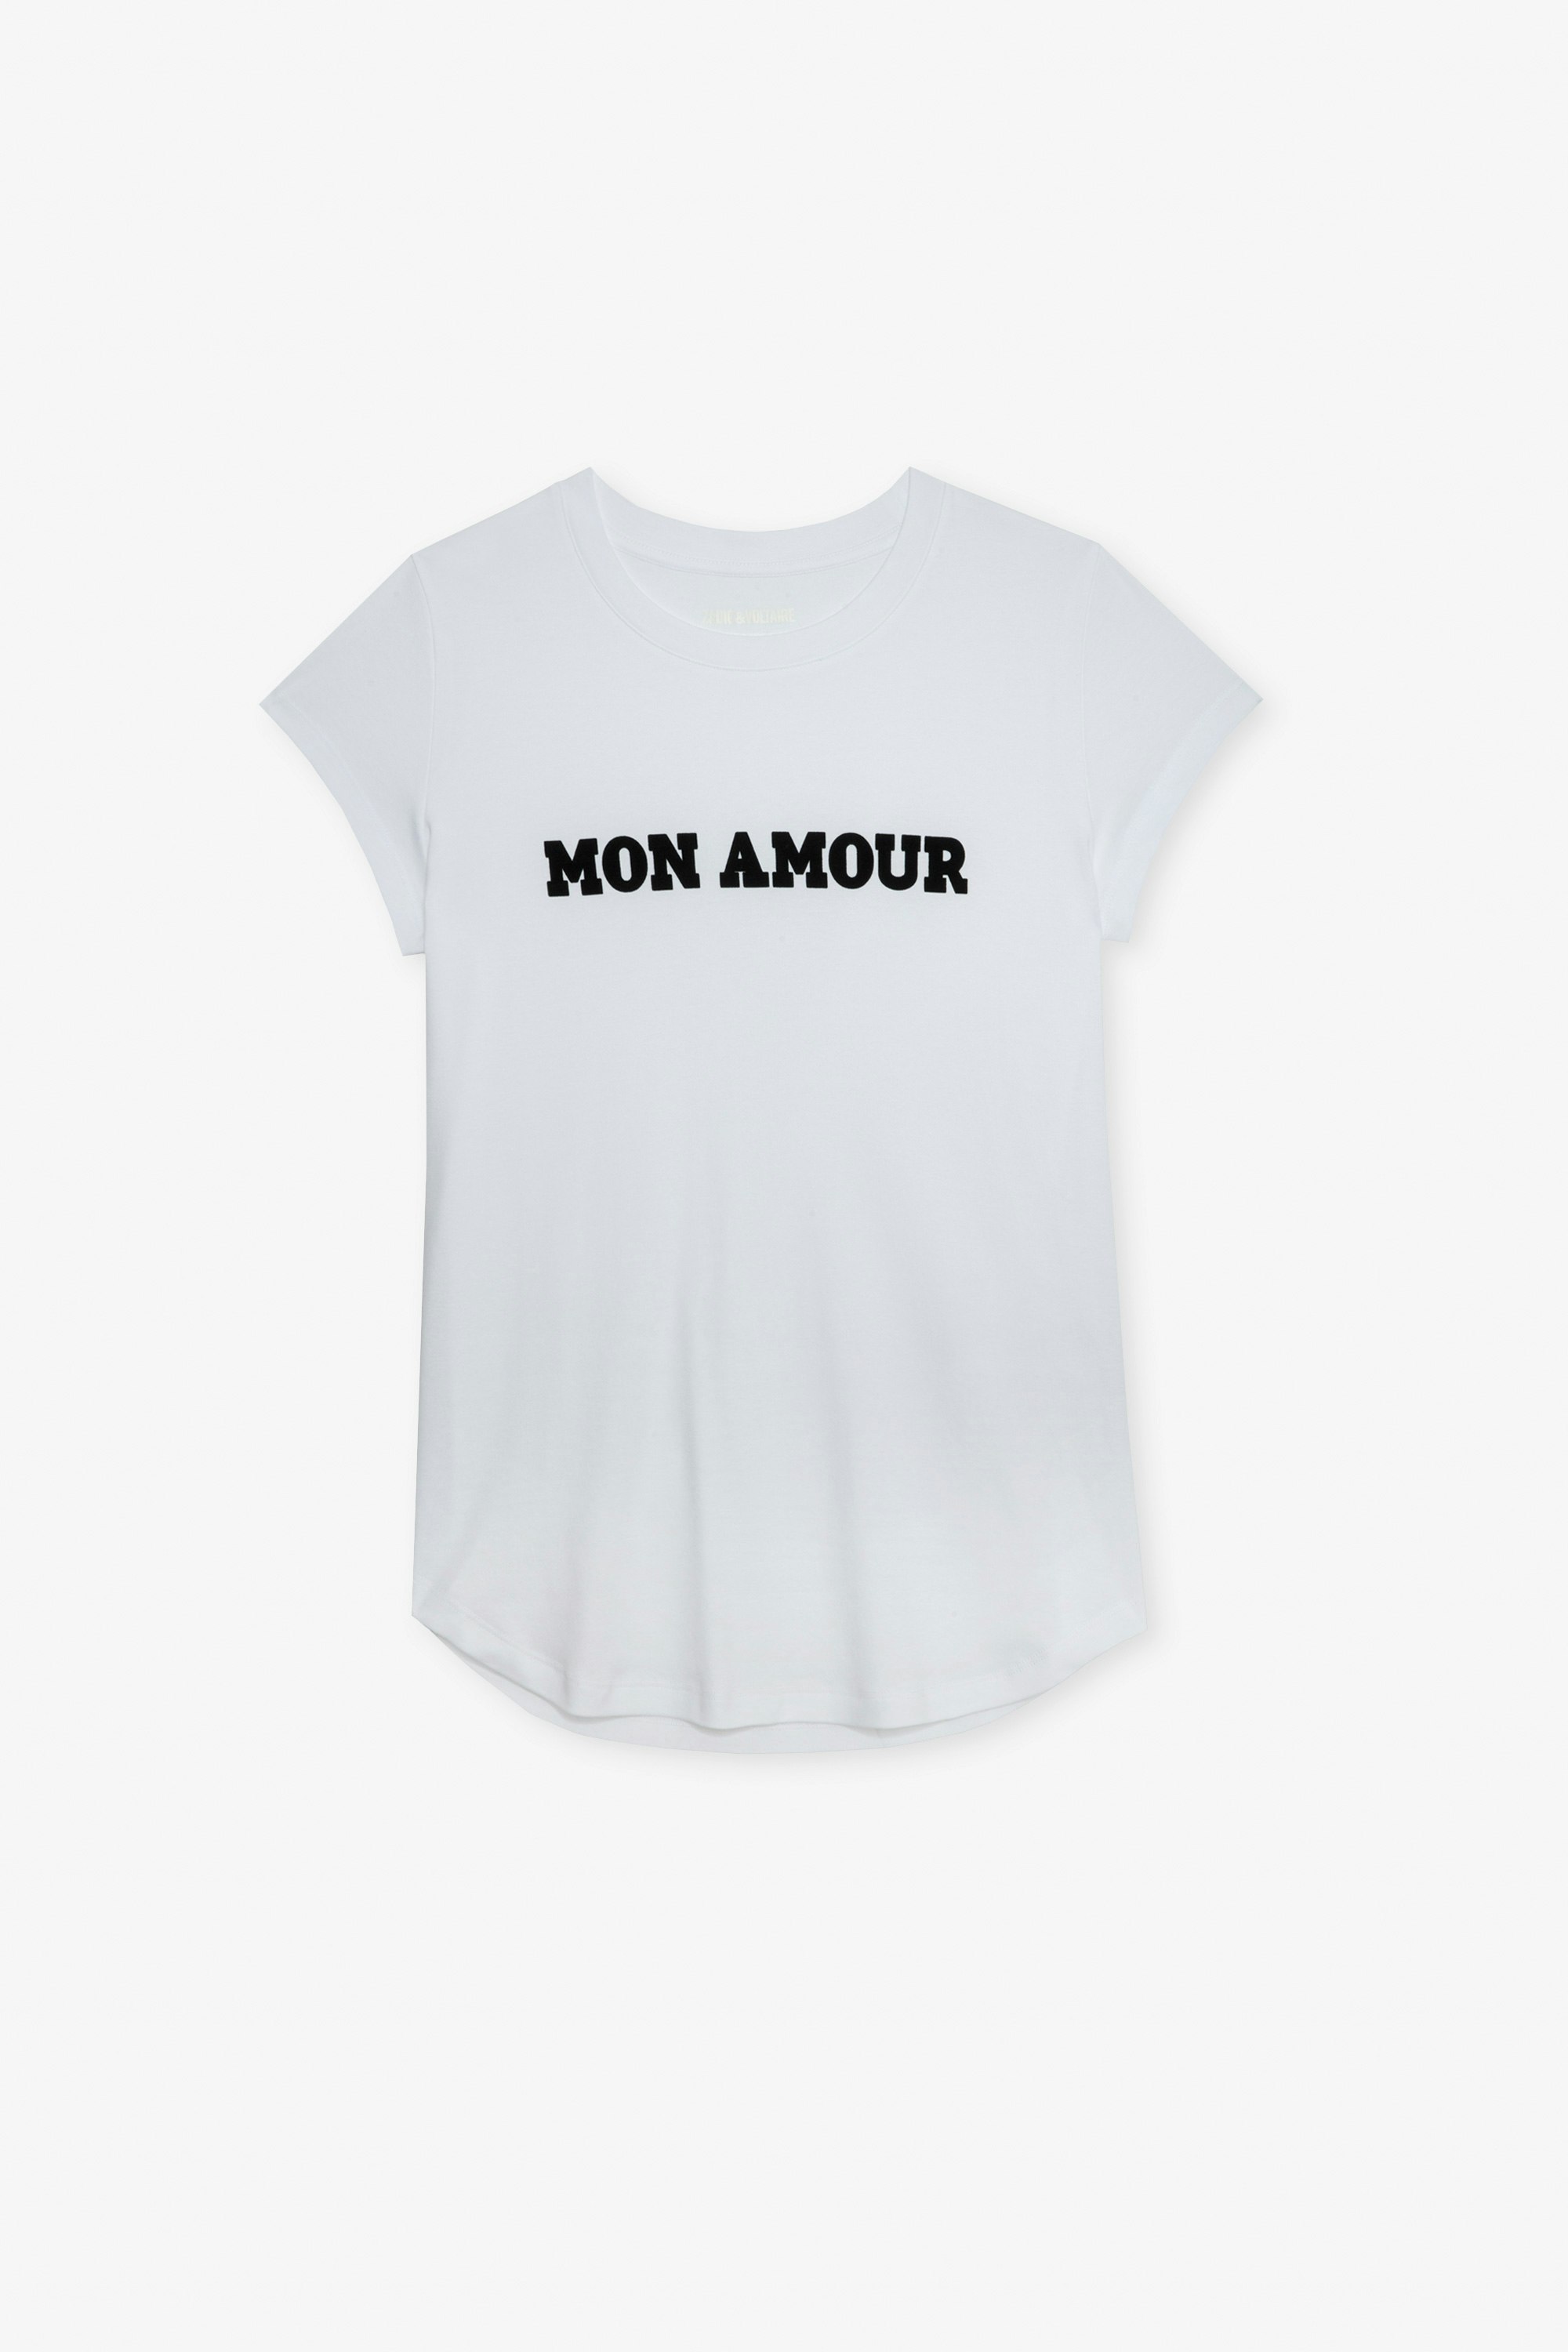 T-shirt Woop Mon Amour T-shirt en coton blanc orné d'une inscription "Mon amour" femme.